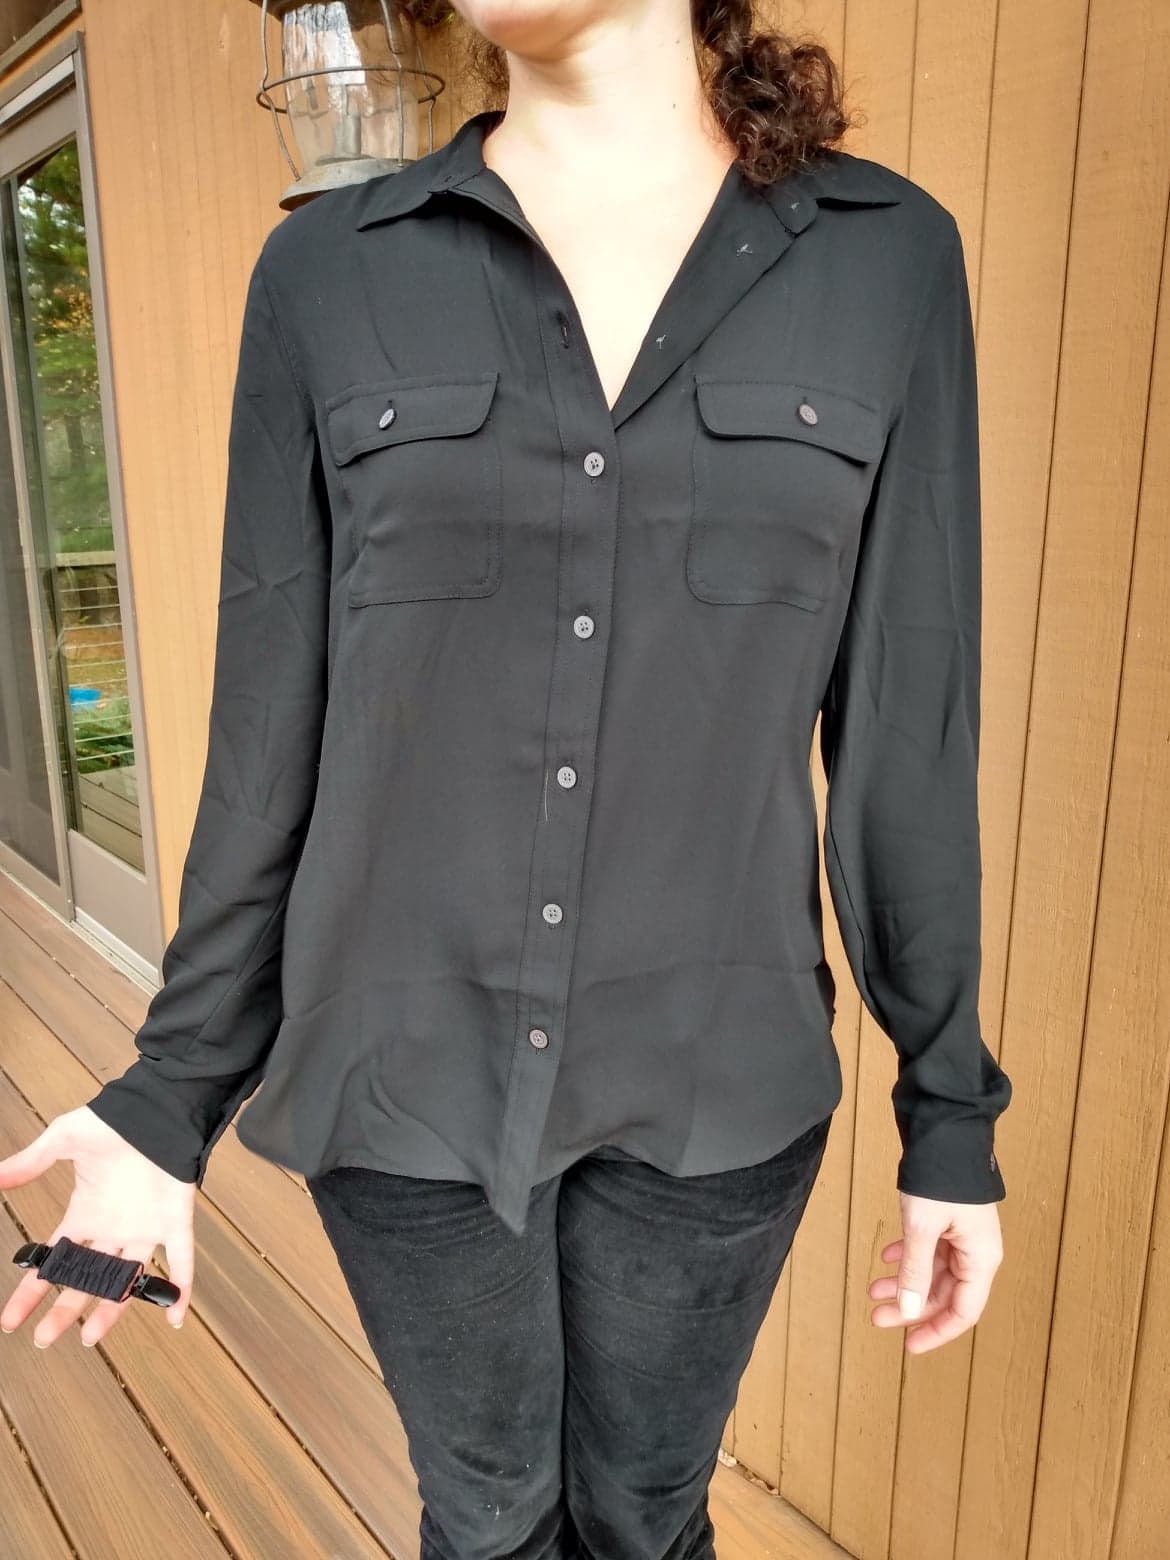 Der Original Blackclip. Kleidung Cinch Clip, Pullover Clip, Kleid Clip.  Verschluss Accessoire für lose Shirts. Elastischer Verschluss für  taillierten Look - .de